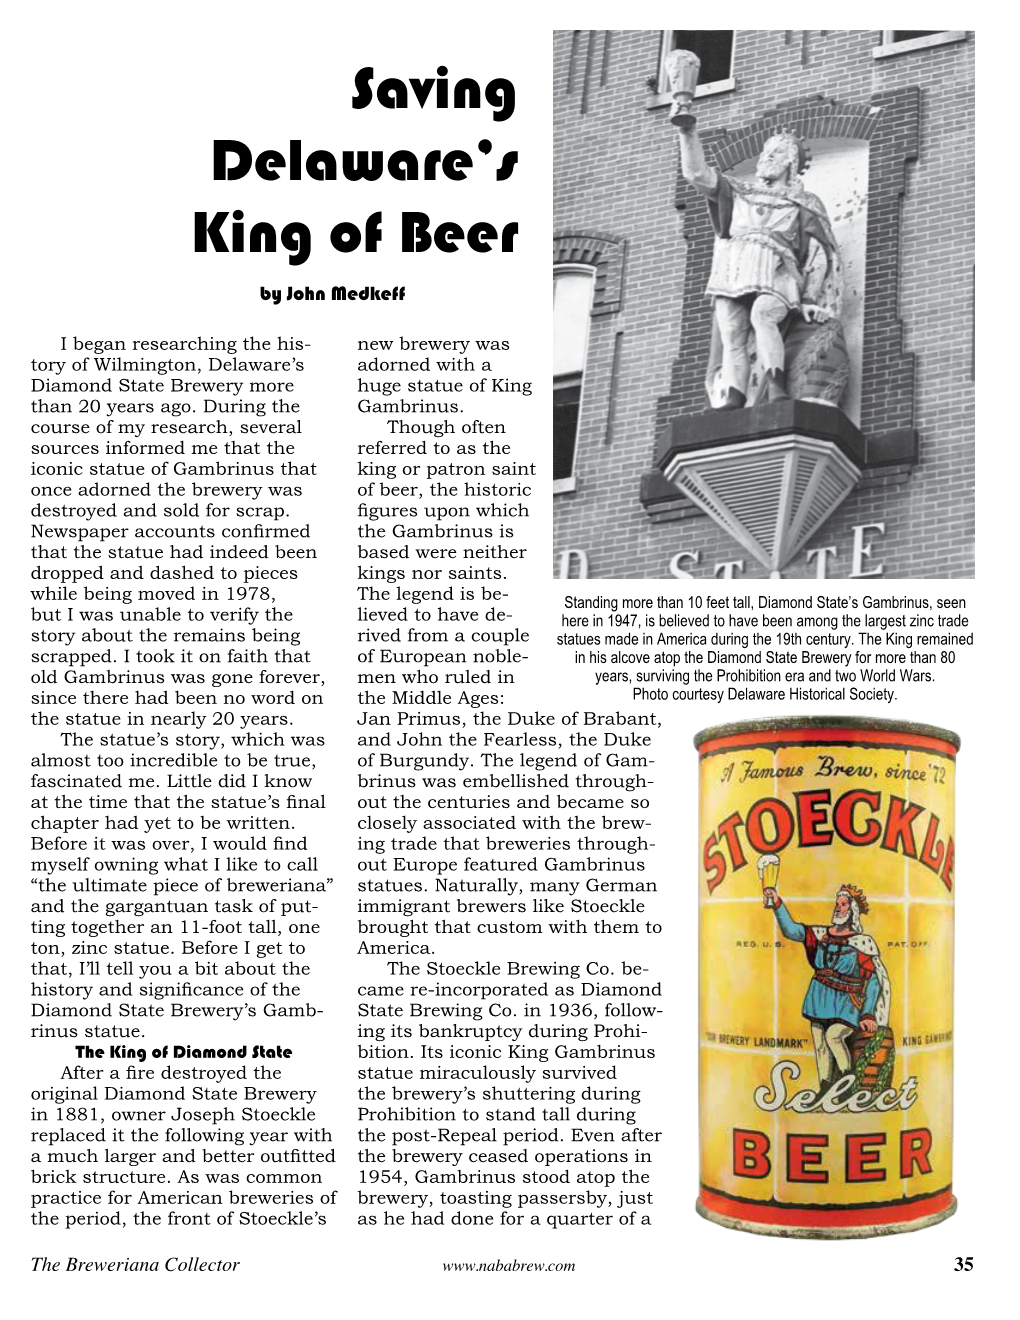 Saving Delaware's King of Beer